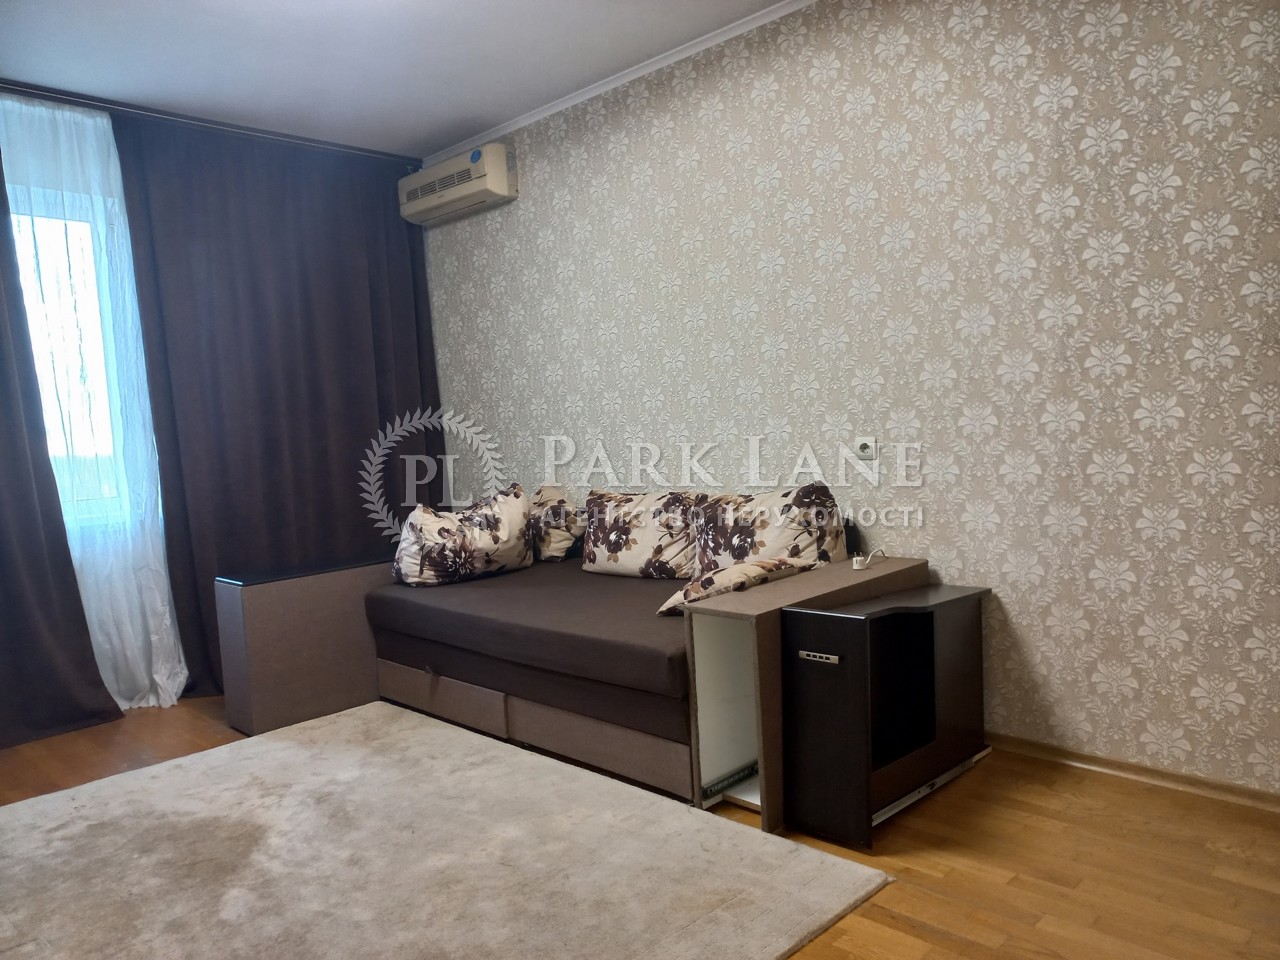 Квартира I-37279, Автозаводская, 63, Киев - Фото 4